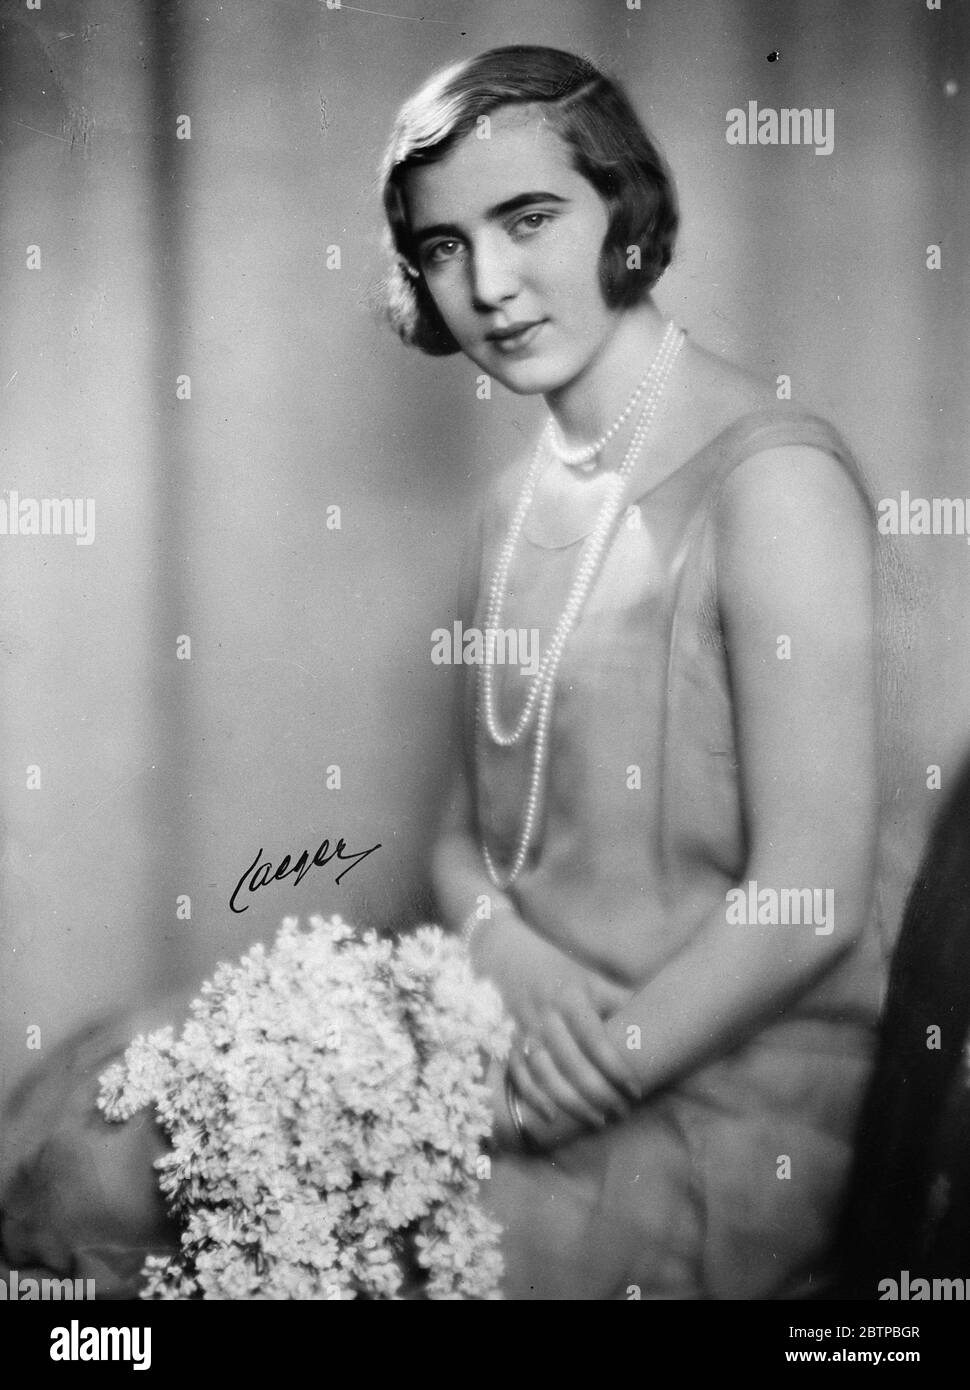 La boda real. Una nueva imagen de la Princesa Ingrid de Suecia , que será dama de honor en la boda del Príncipe Olaf de Noruega y la Princesa Martha de Suecia . 19 de marzo de 1929 Foto de stock